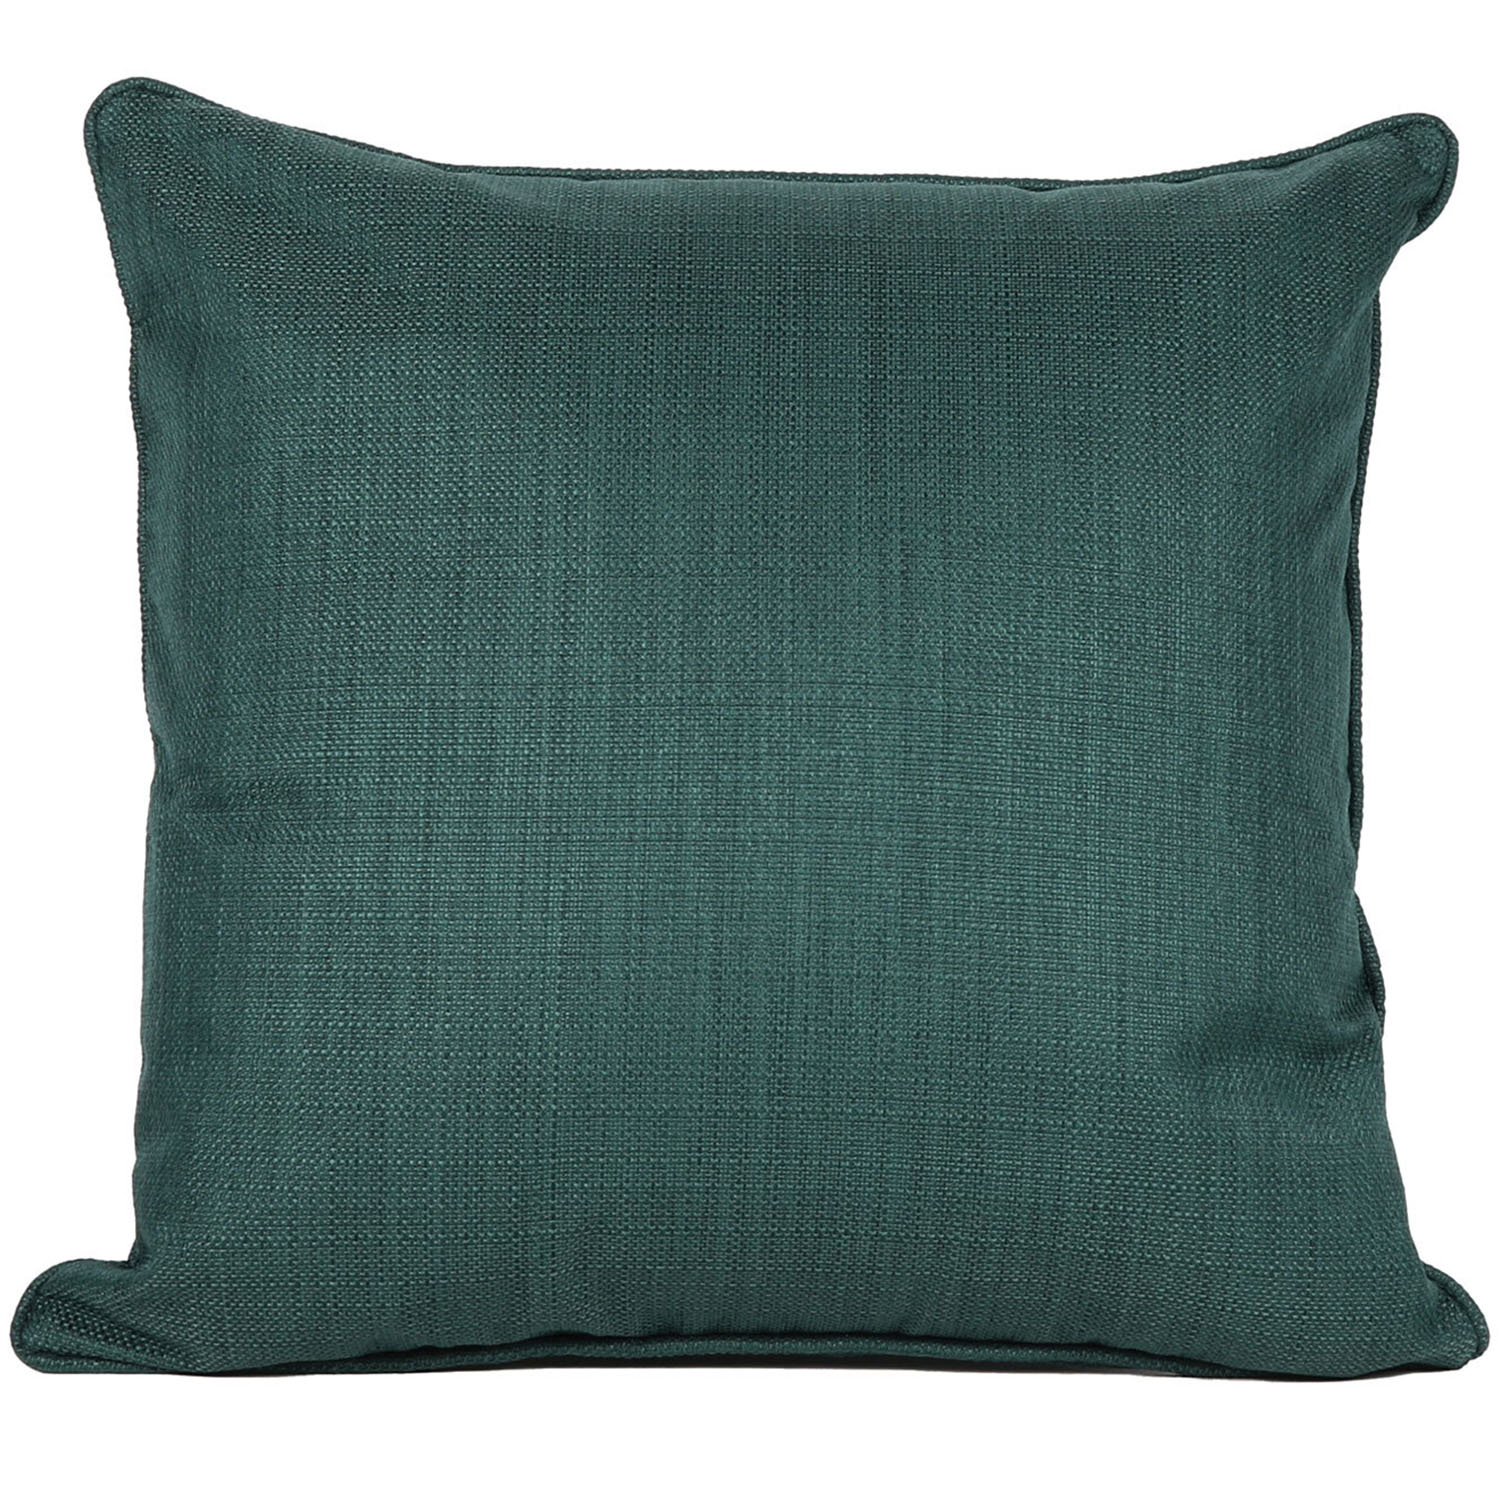 Divante Hoxton Dark Green Cushion 45 x 45cm Image